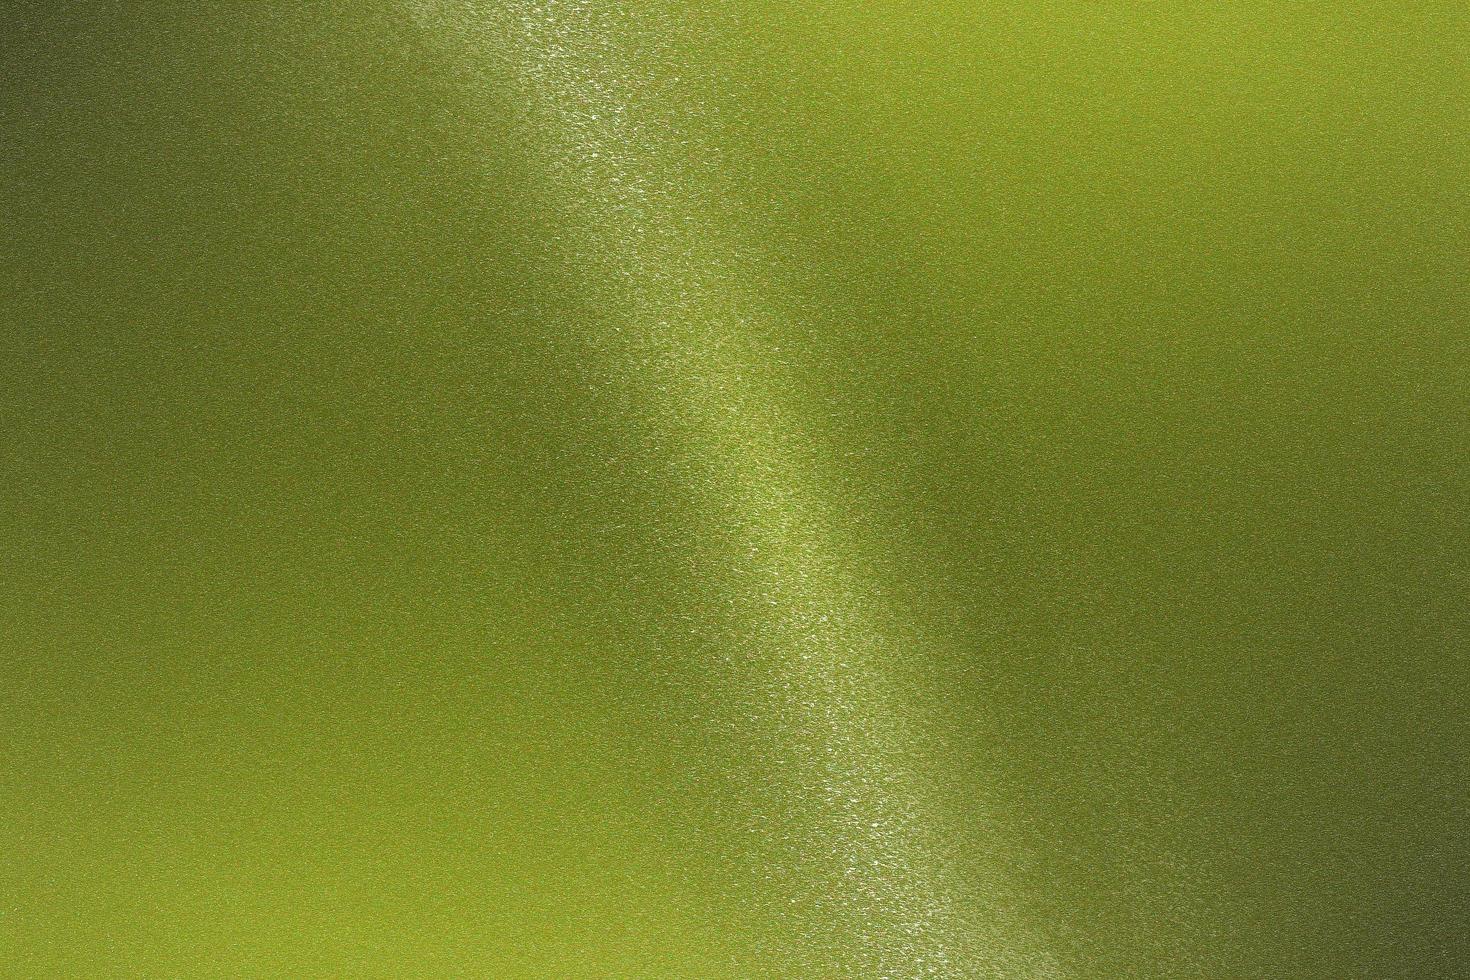 mur métallique vert clair brillant avec espace de copie, fond de texture de papier peint photo